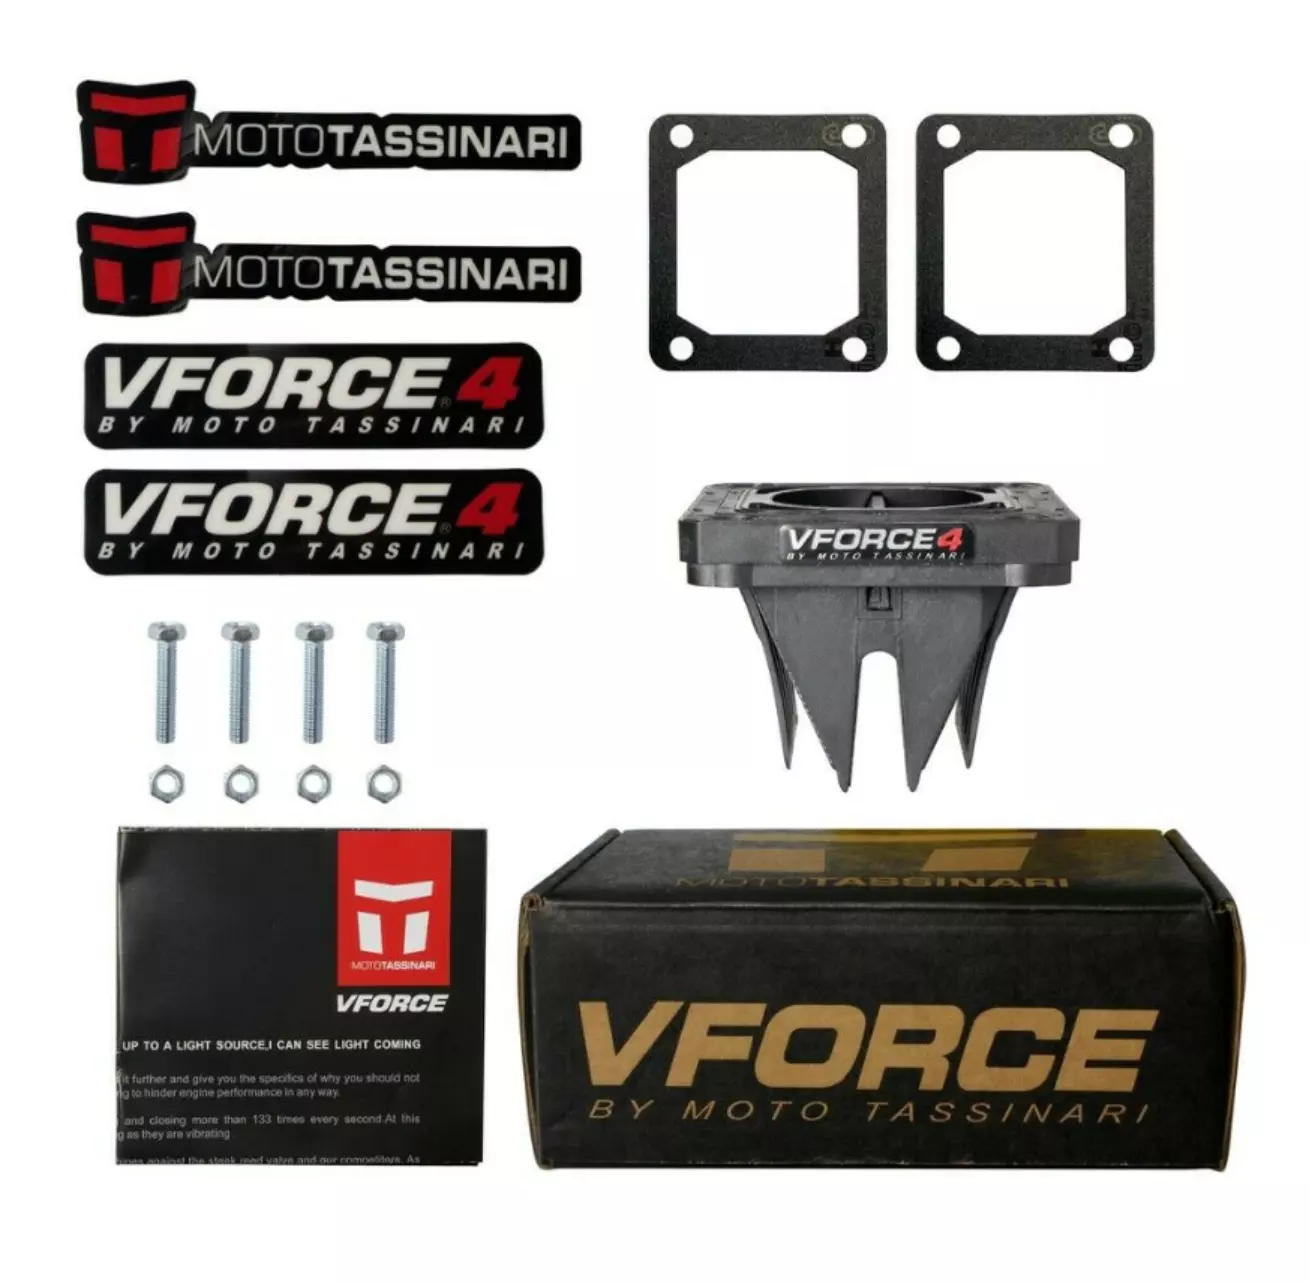 2 Pcs Banshee V Force 4 Reeds Cages VForce Yamaha YFZ 350 Reed Valve DHL EXPRES - £86.48 GBP